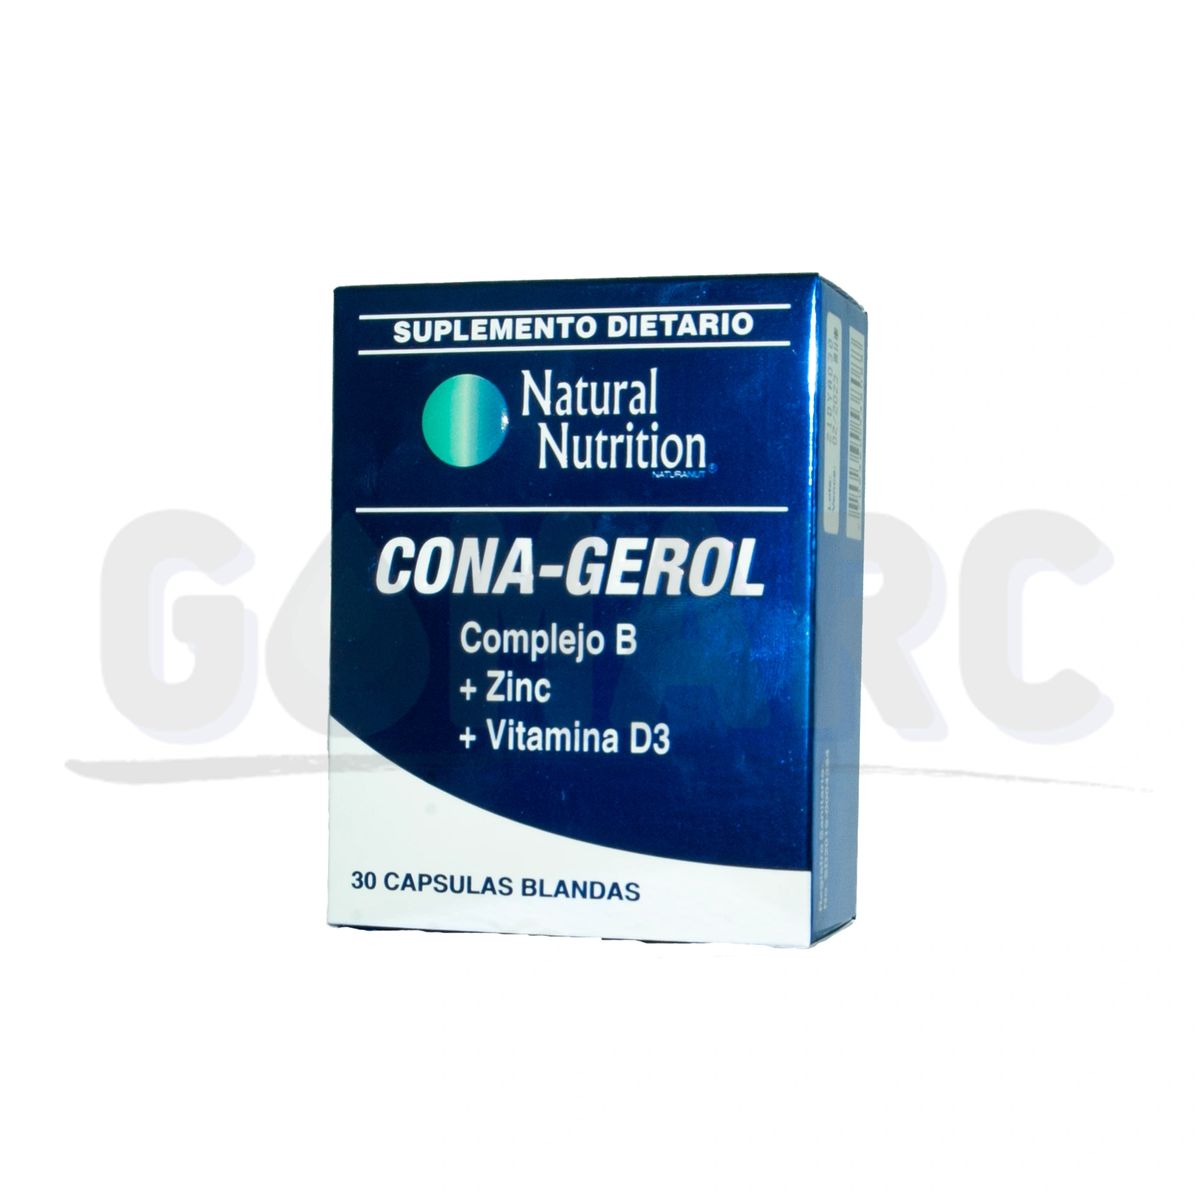 Cona-gerol (Complejo B + Zinc + Vitamina D3)